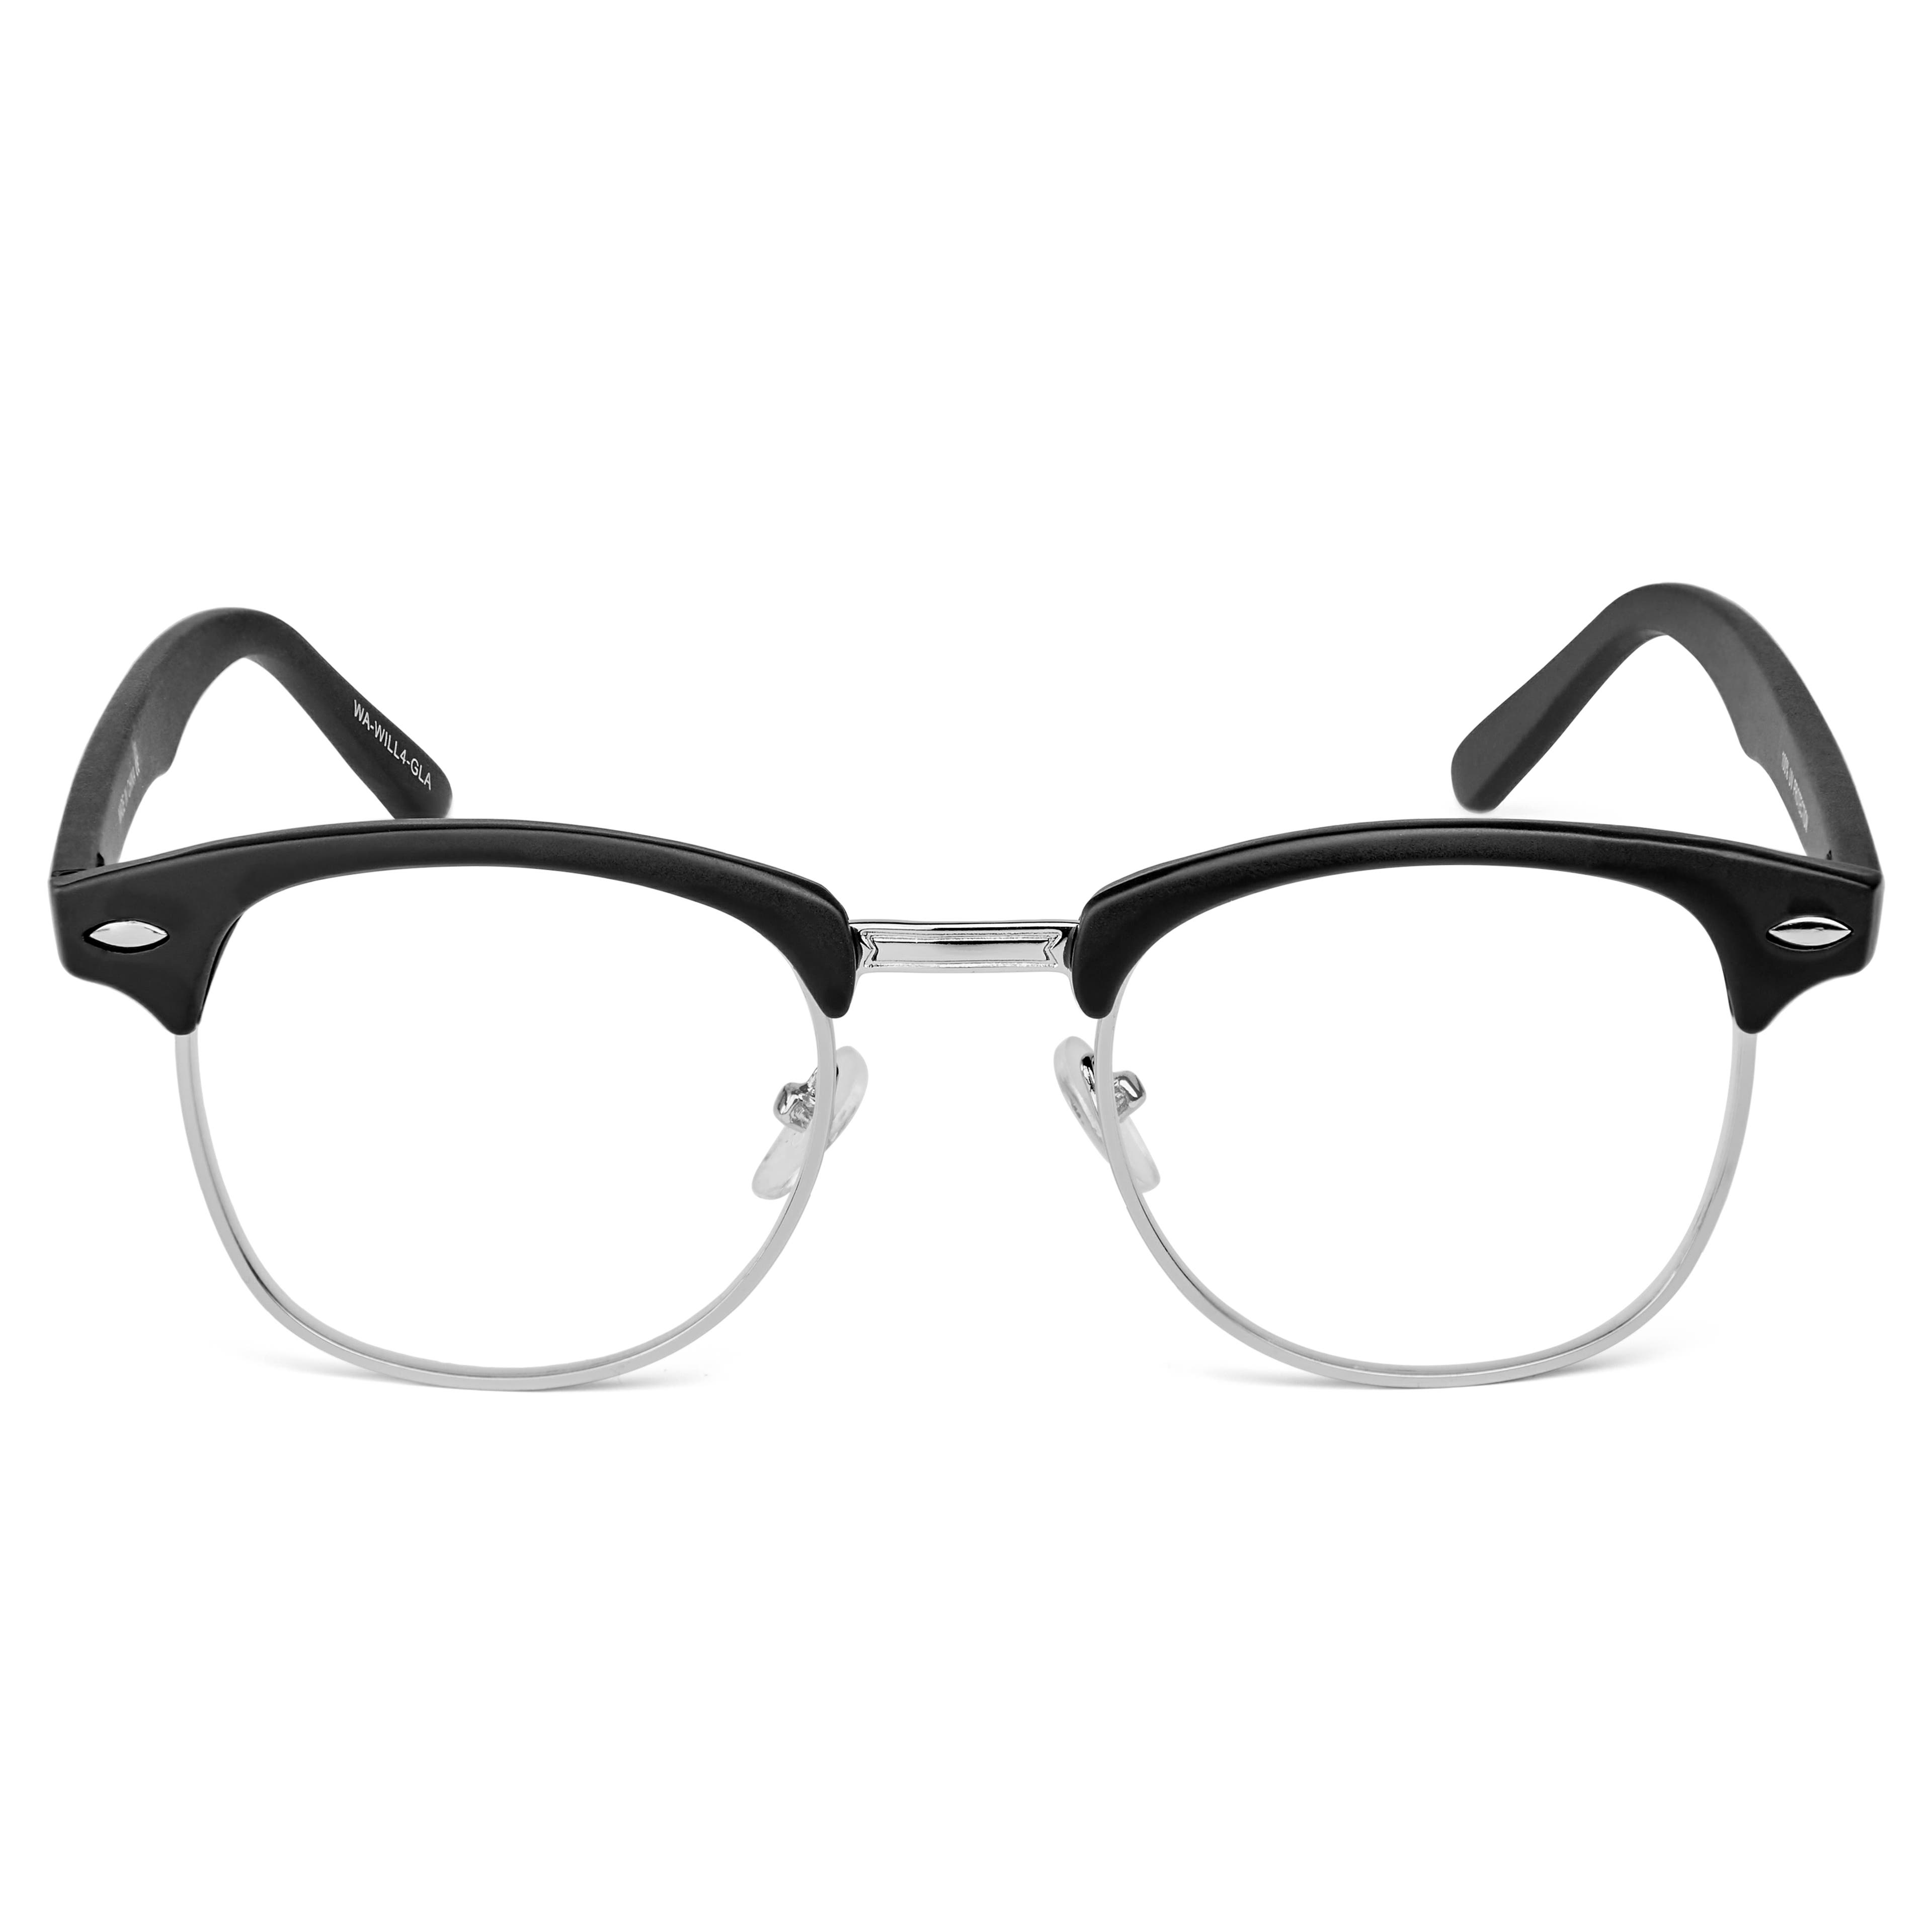 Gafas browline con las lentes transparentes